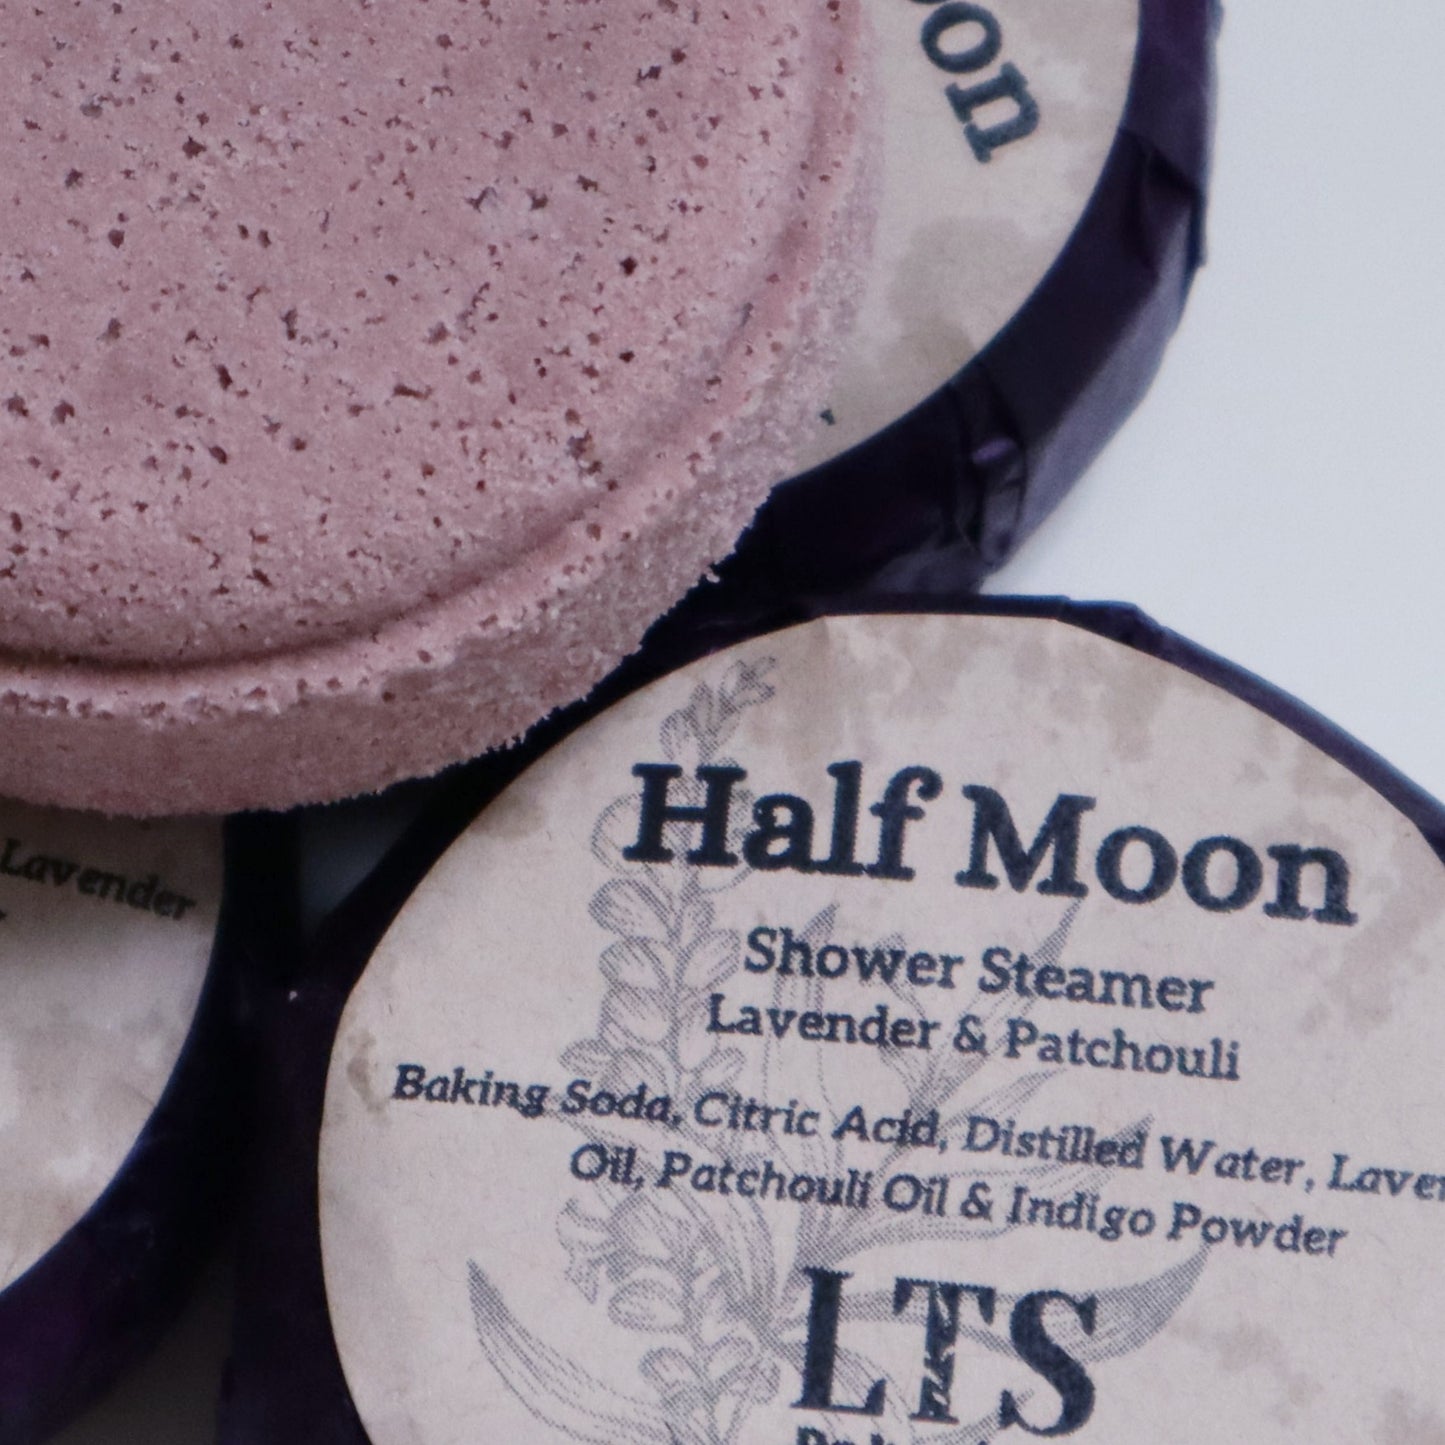 Half Moon Shower Steamer